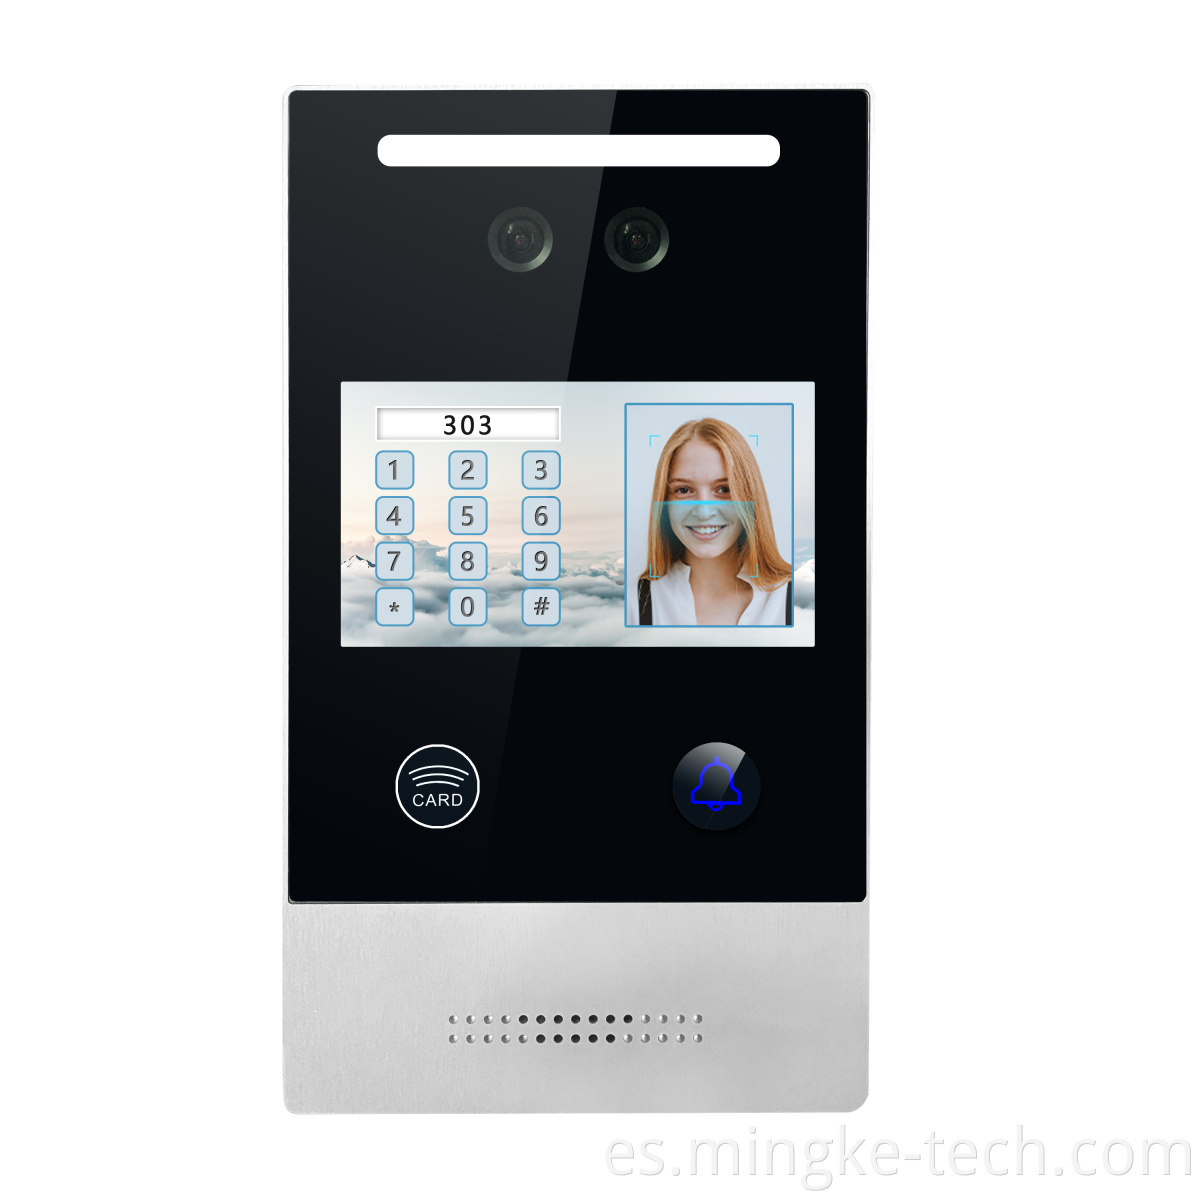 Beque de buena calidad Teléfono IP Converter Intercom Intercom Monitor interior Monitor de interior Android Villa Entrance puerta de videos Smart